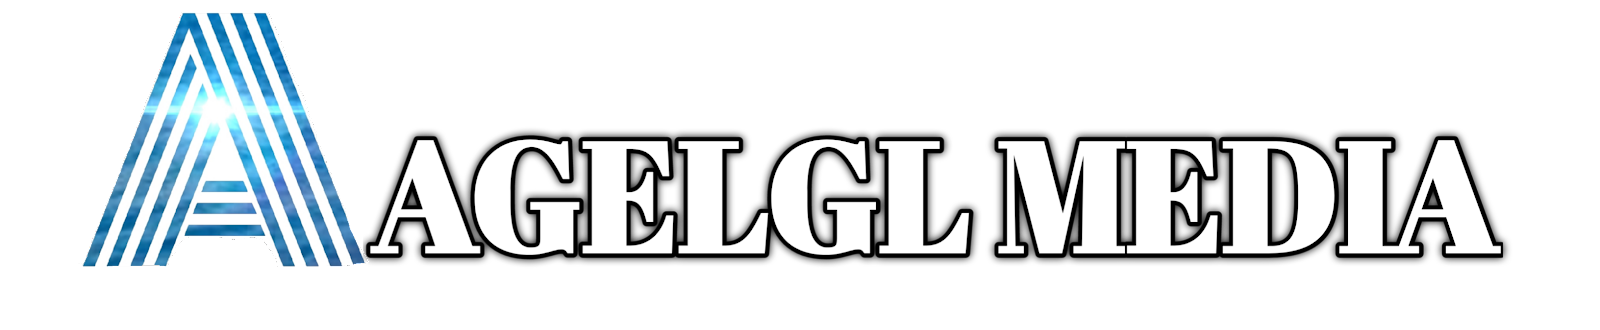 Agelgl Media